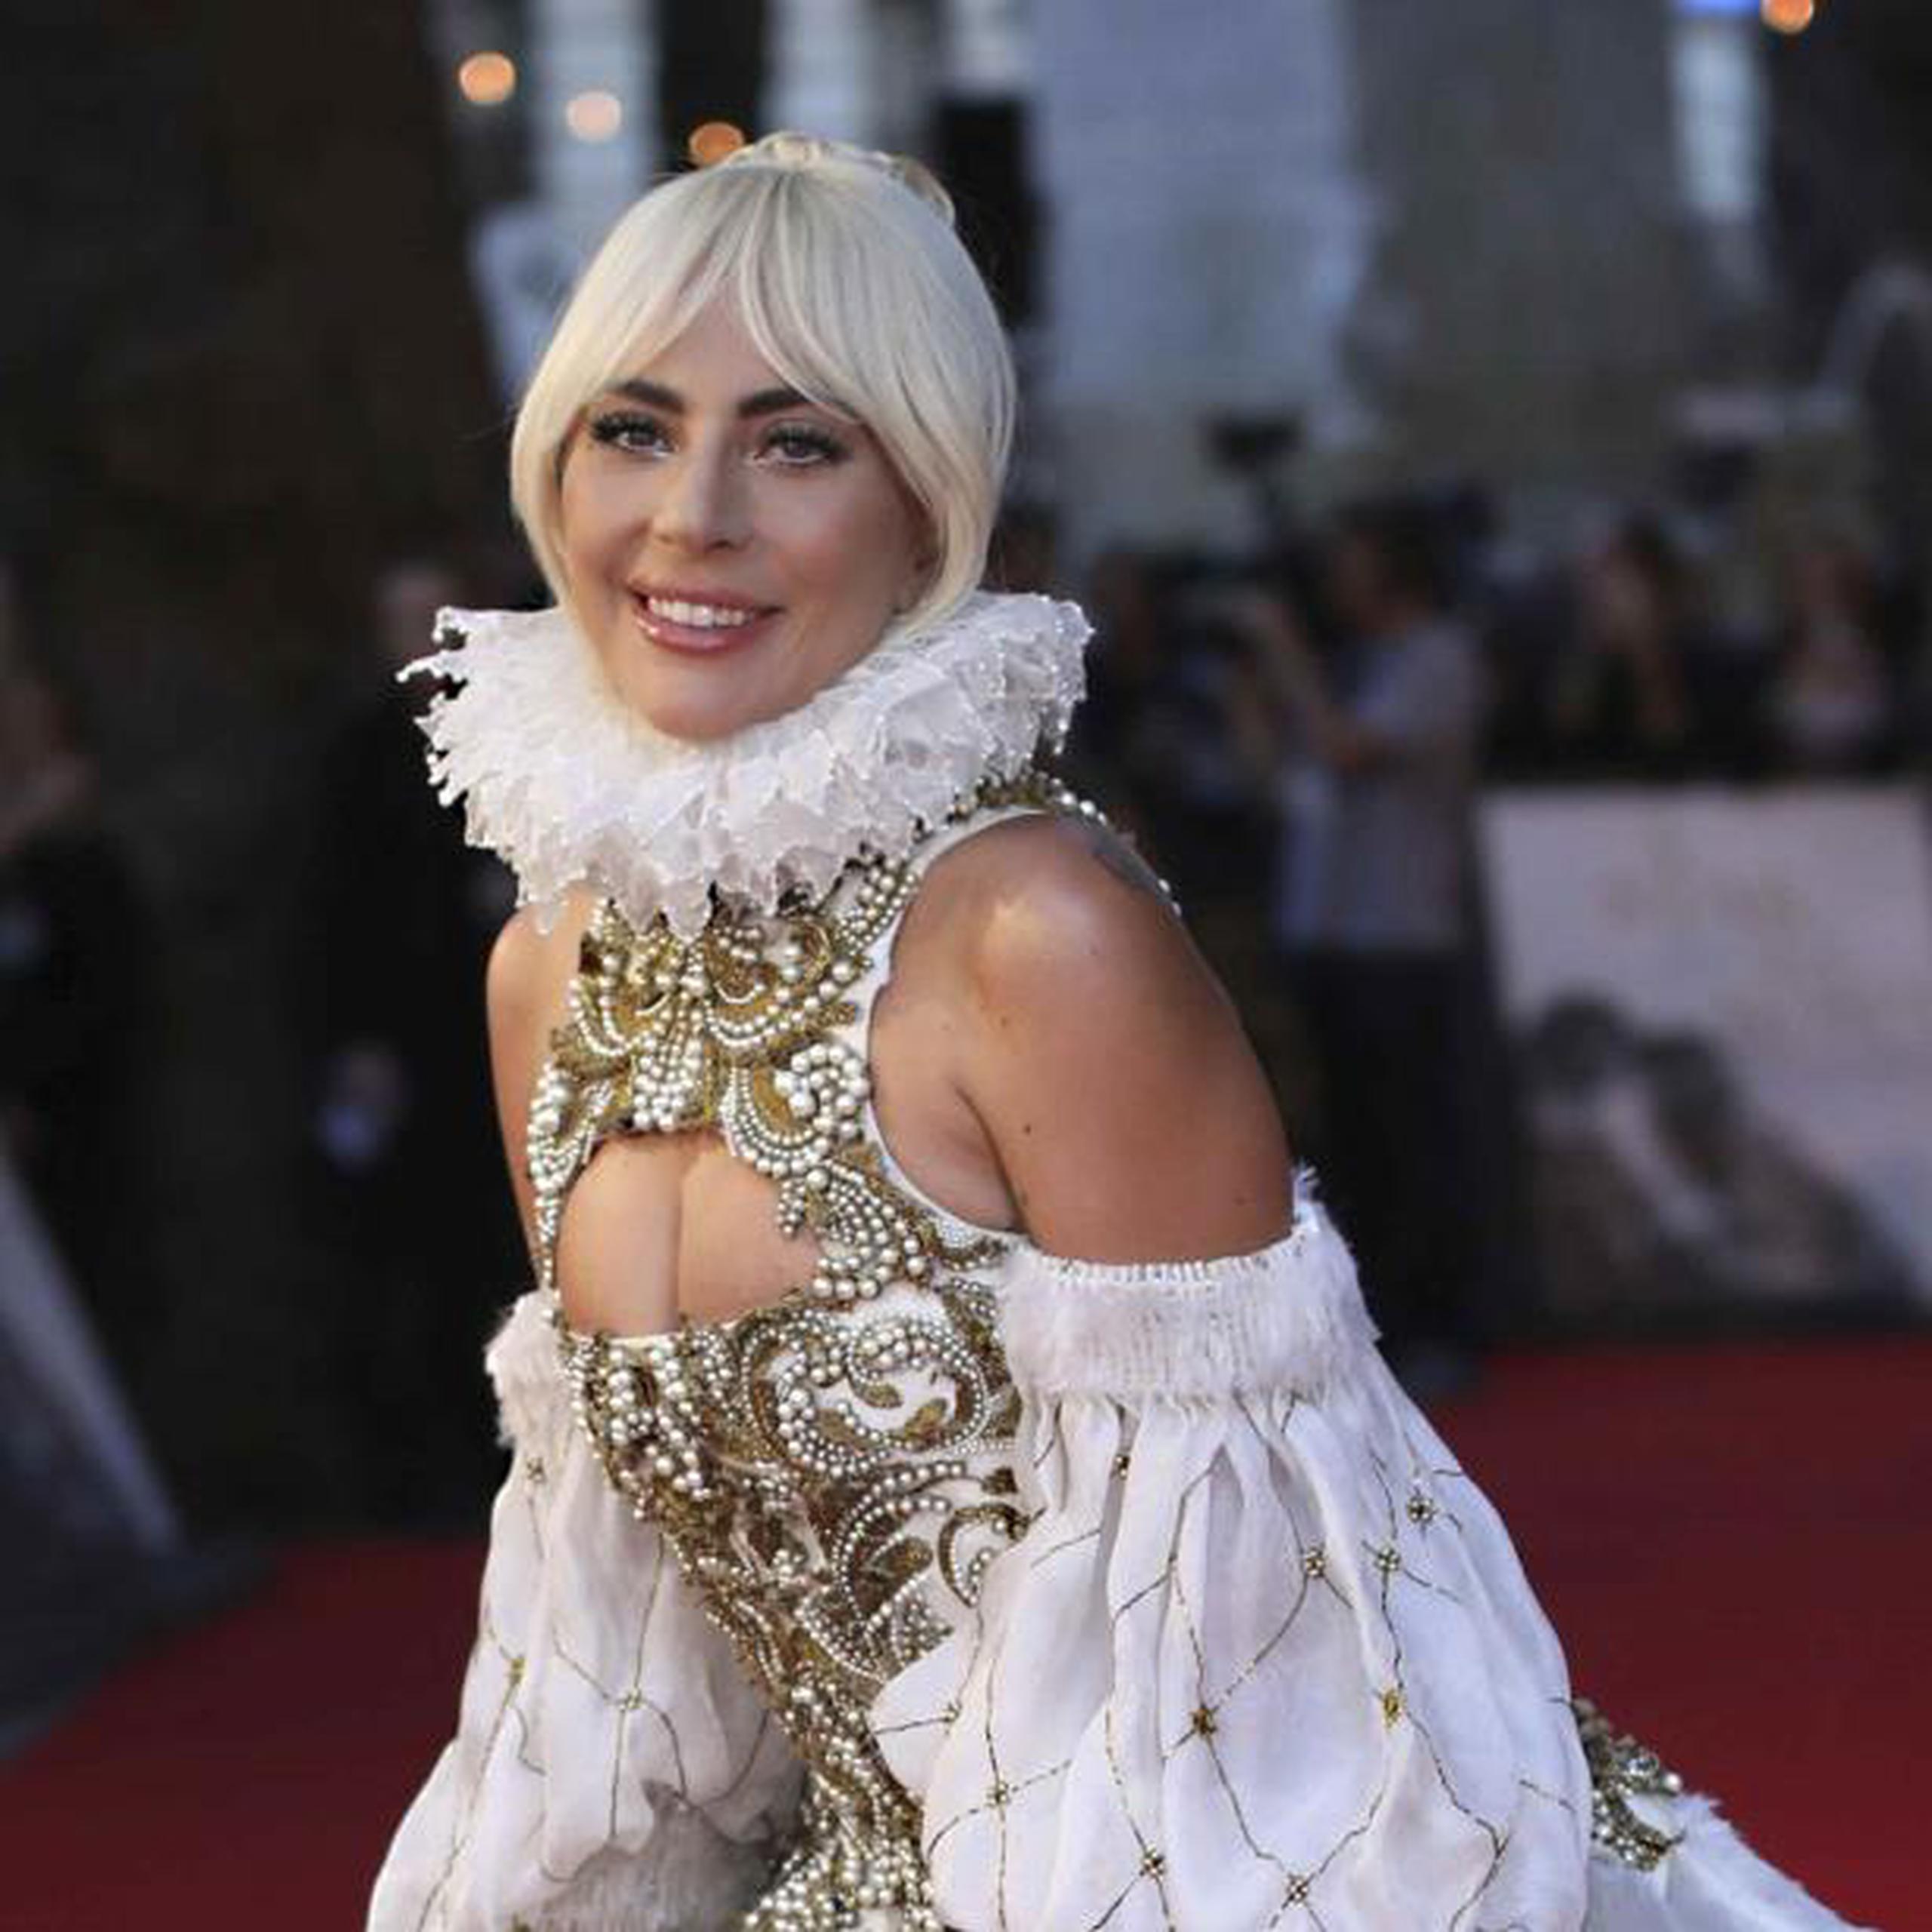 Lady Gaga padece de fibromialgia, una condición marcada por dolores musculoesqueléticos crónicos y generalizados que la ha llevado a cancelar varios conciertos. (Archivo)